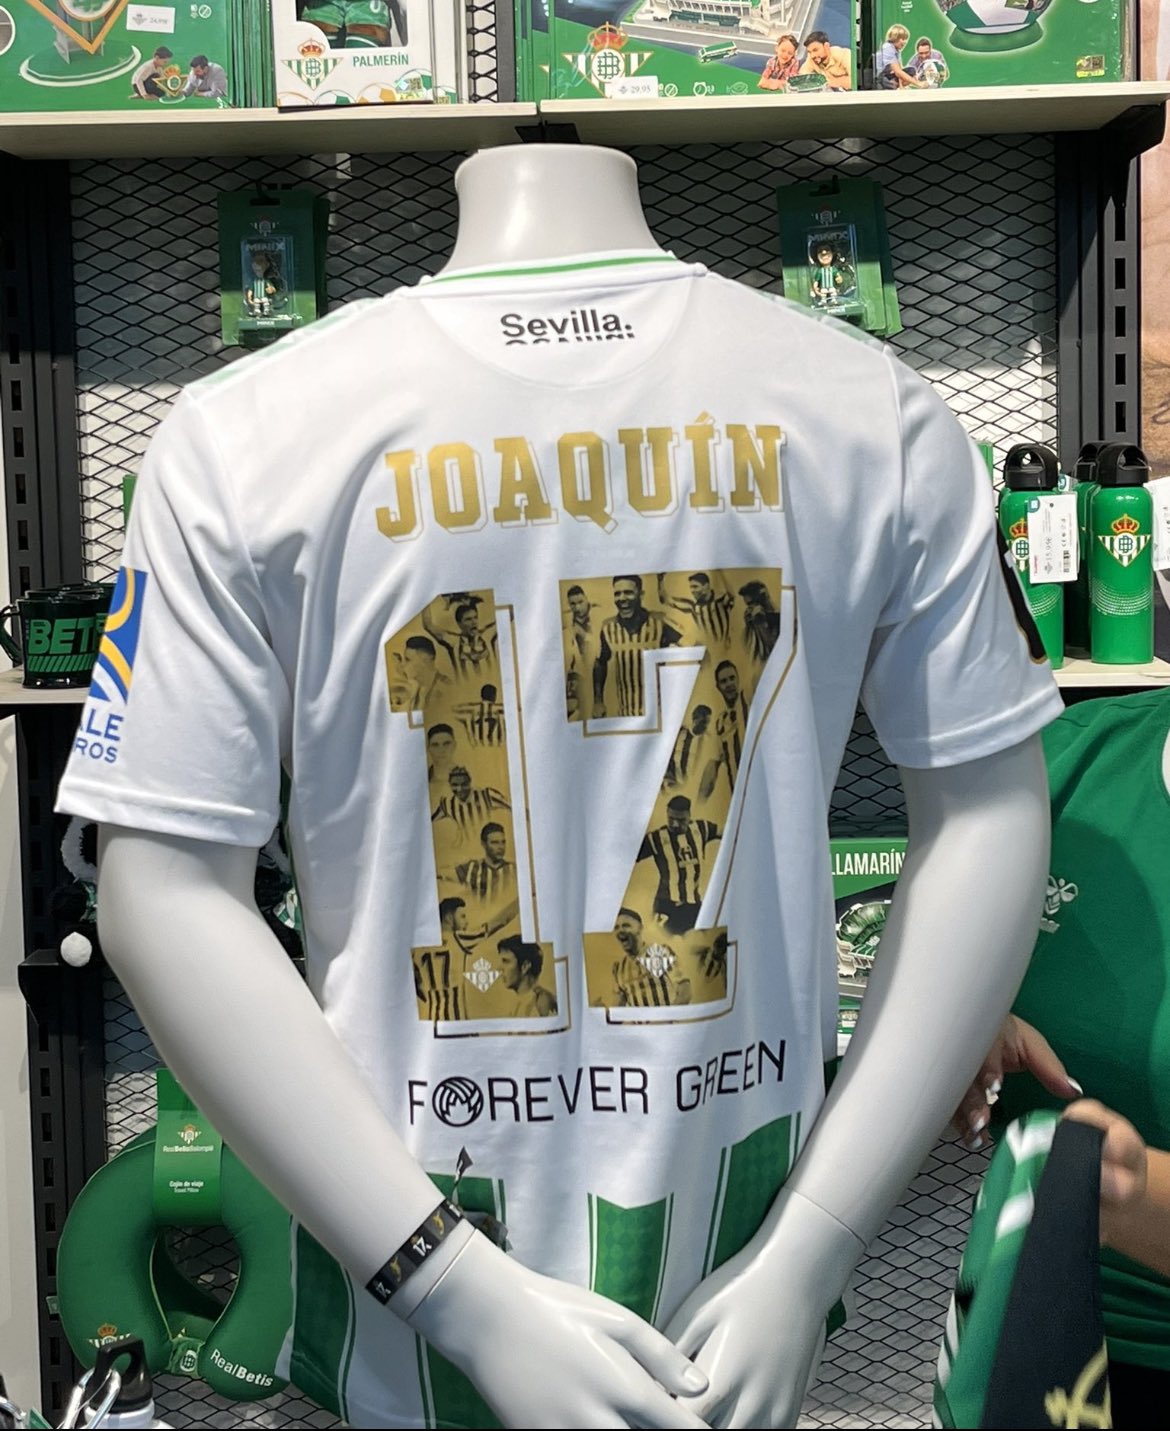 Existe Corte cavar 𝙎𝙞𝙚𝙢𝙥𝙧𝙚 𝙁𝙪𝙚𝙧𝙩𝙚 on Twitter: "ÚLTIMA HORA | 🟢 Así será la  camiseta que lleven los jugadores, en el partido de homenaje de nuestro  capitán Joaquín Sánchez el 6 de Junio. 𝐓𝐇𝐄 𝐋𝐀𝐒𝐓